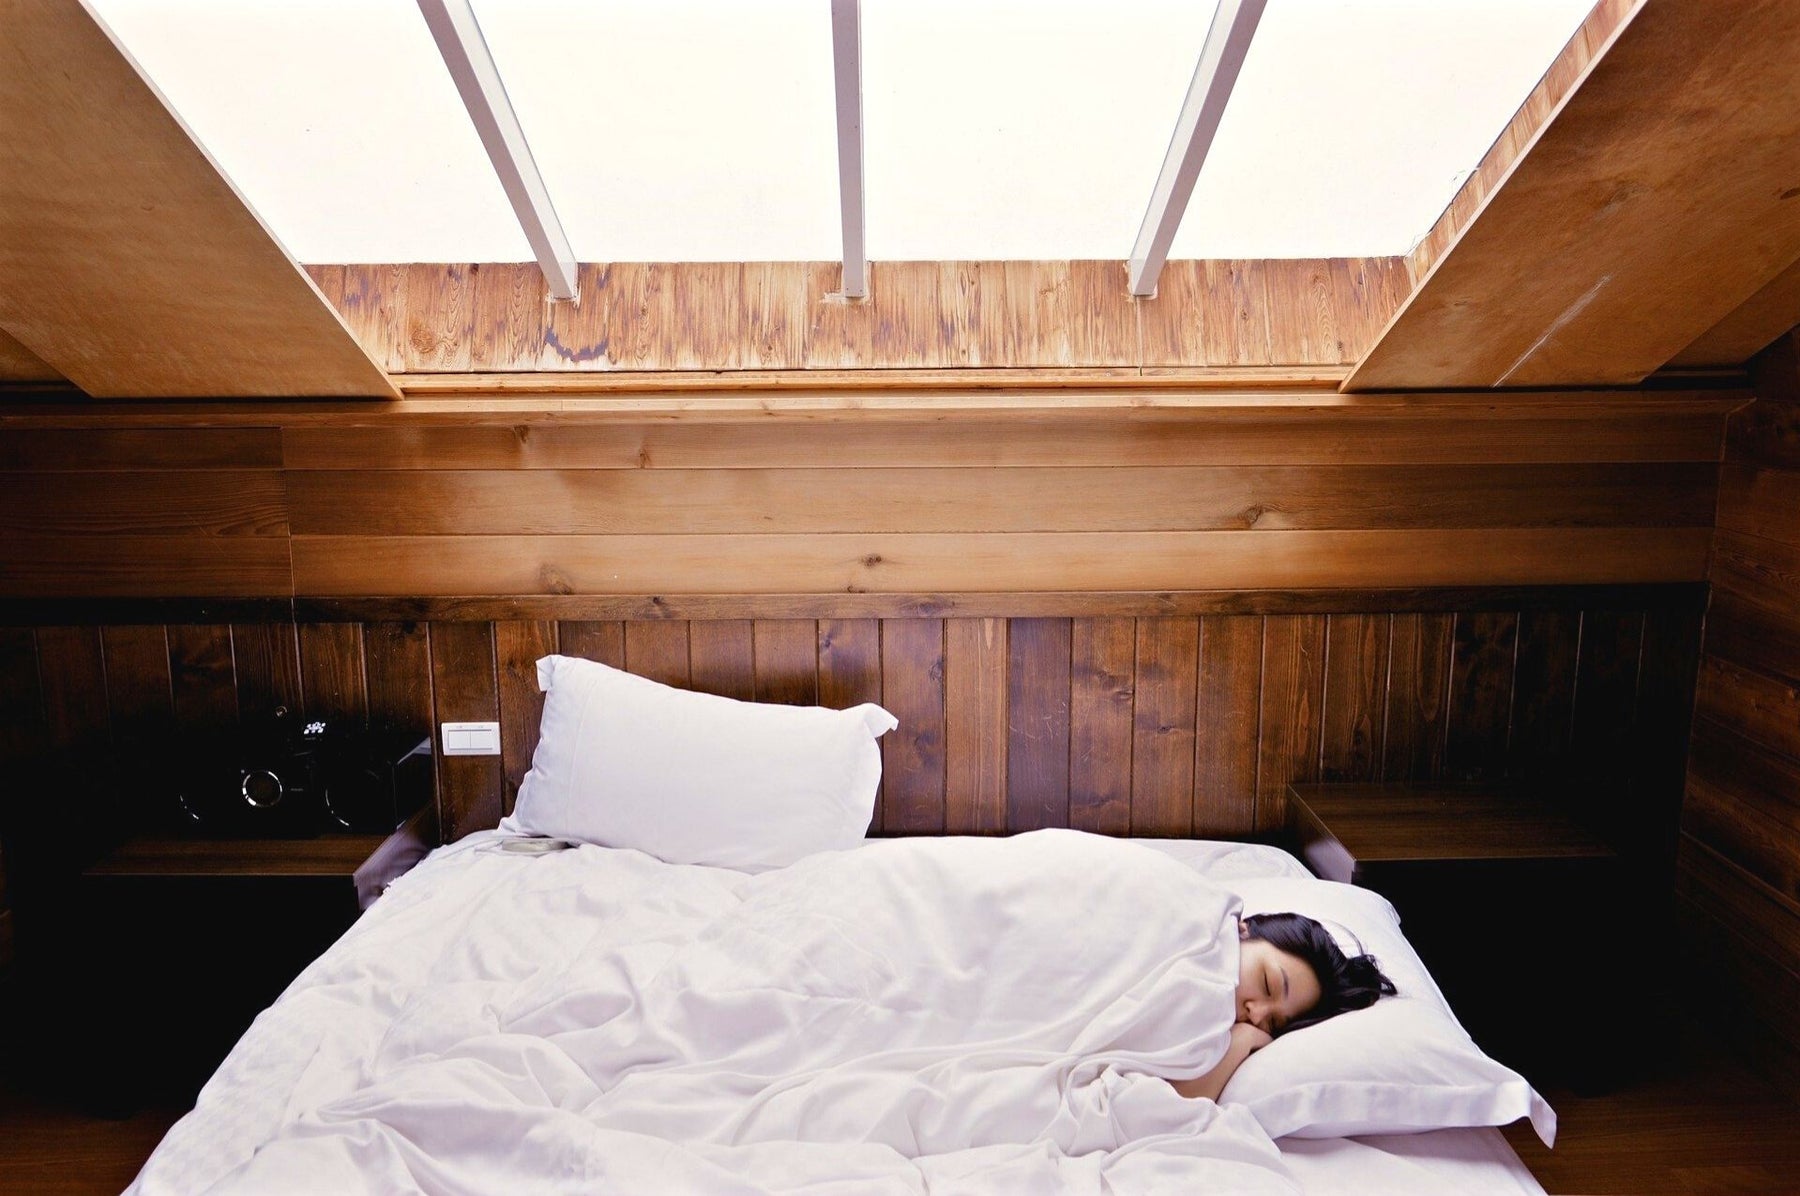 Eine Frau liegt schlafend in einem Bett